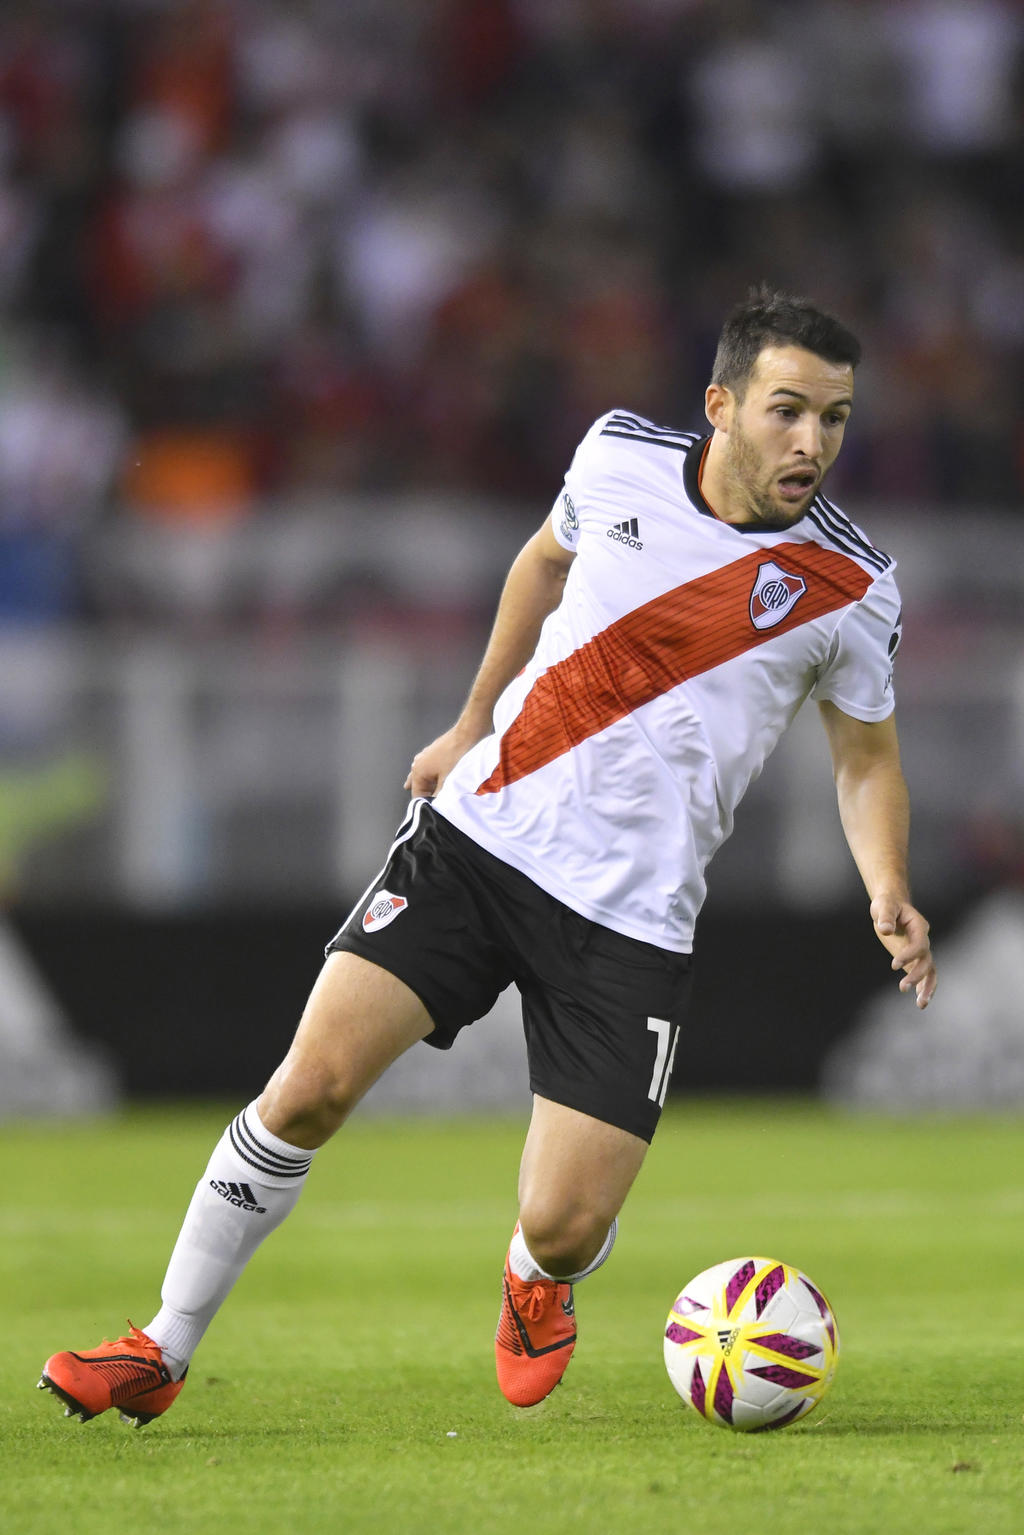 El defensor charrúa proviene desde el River Plate. (JM)